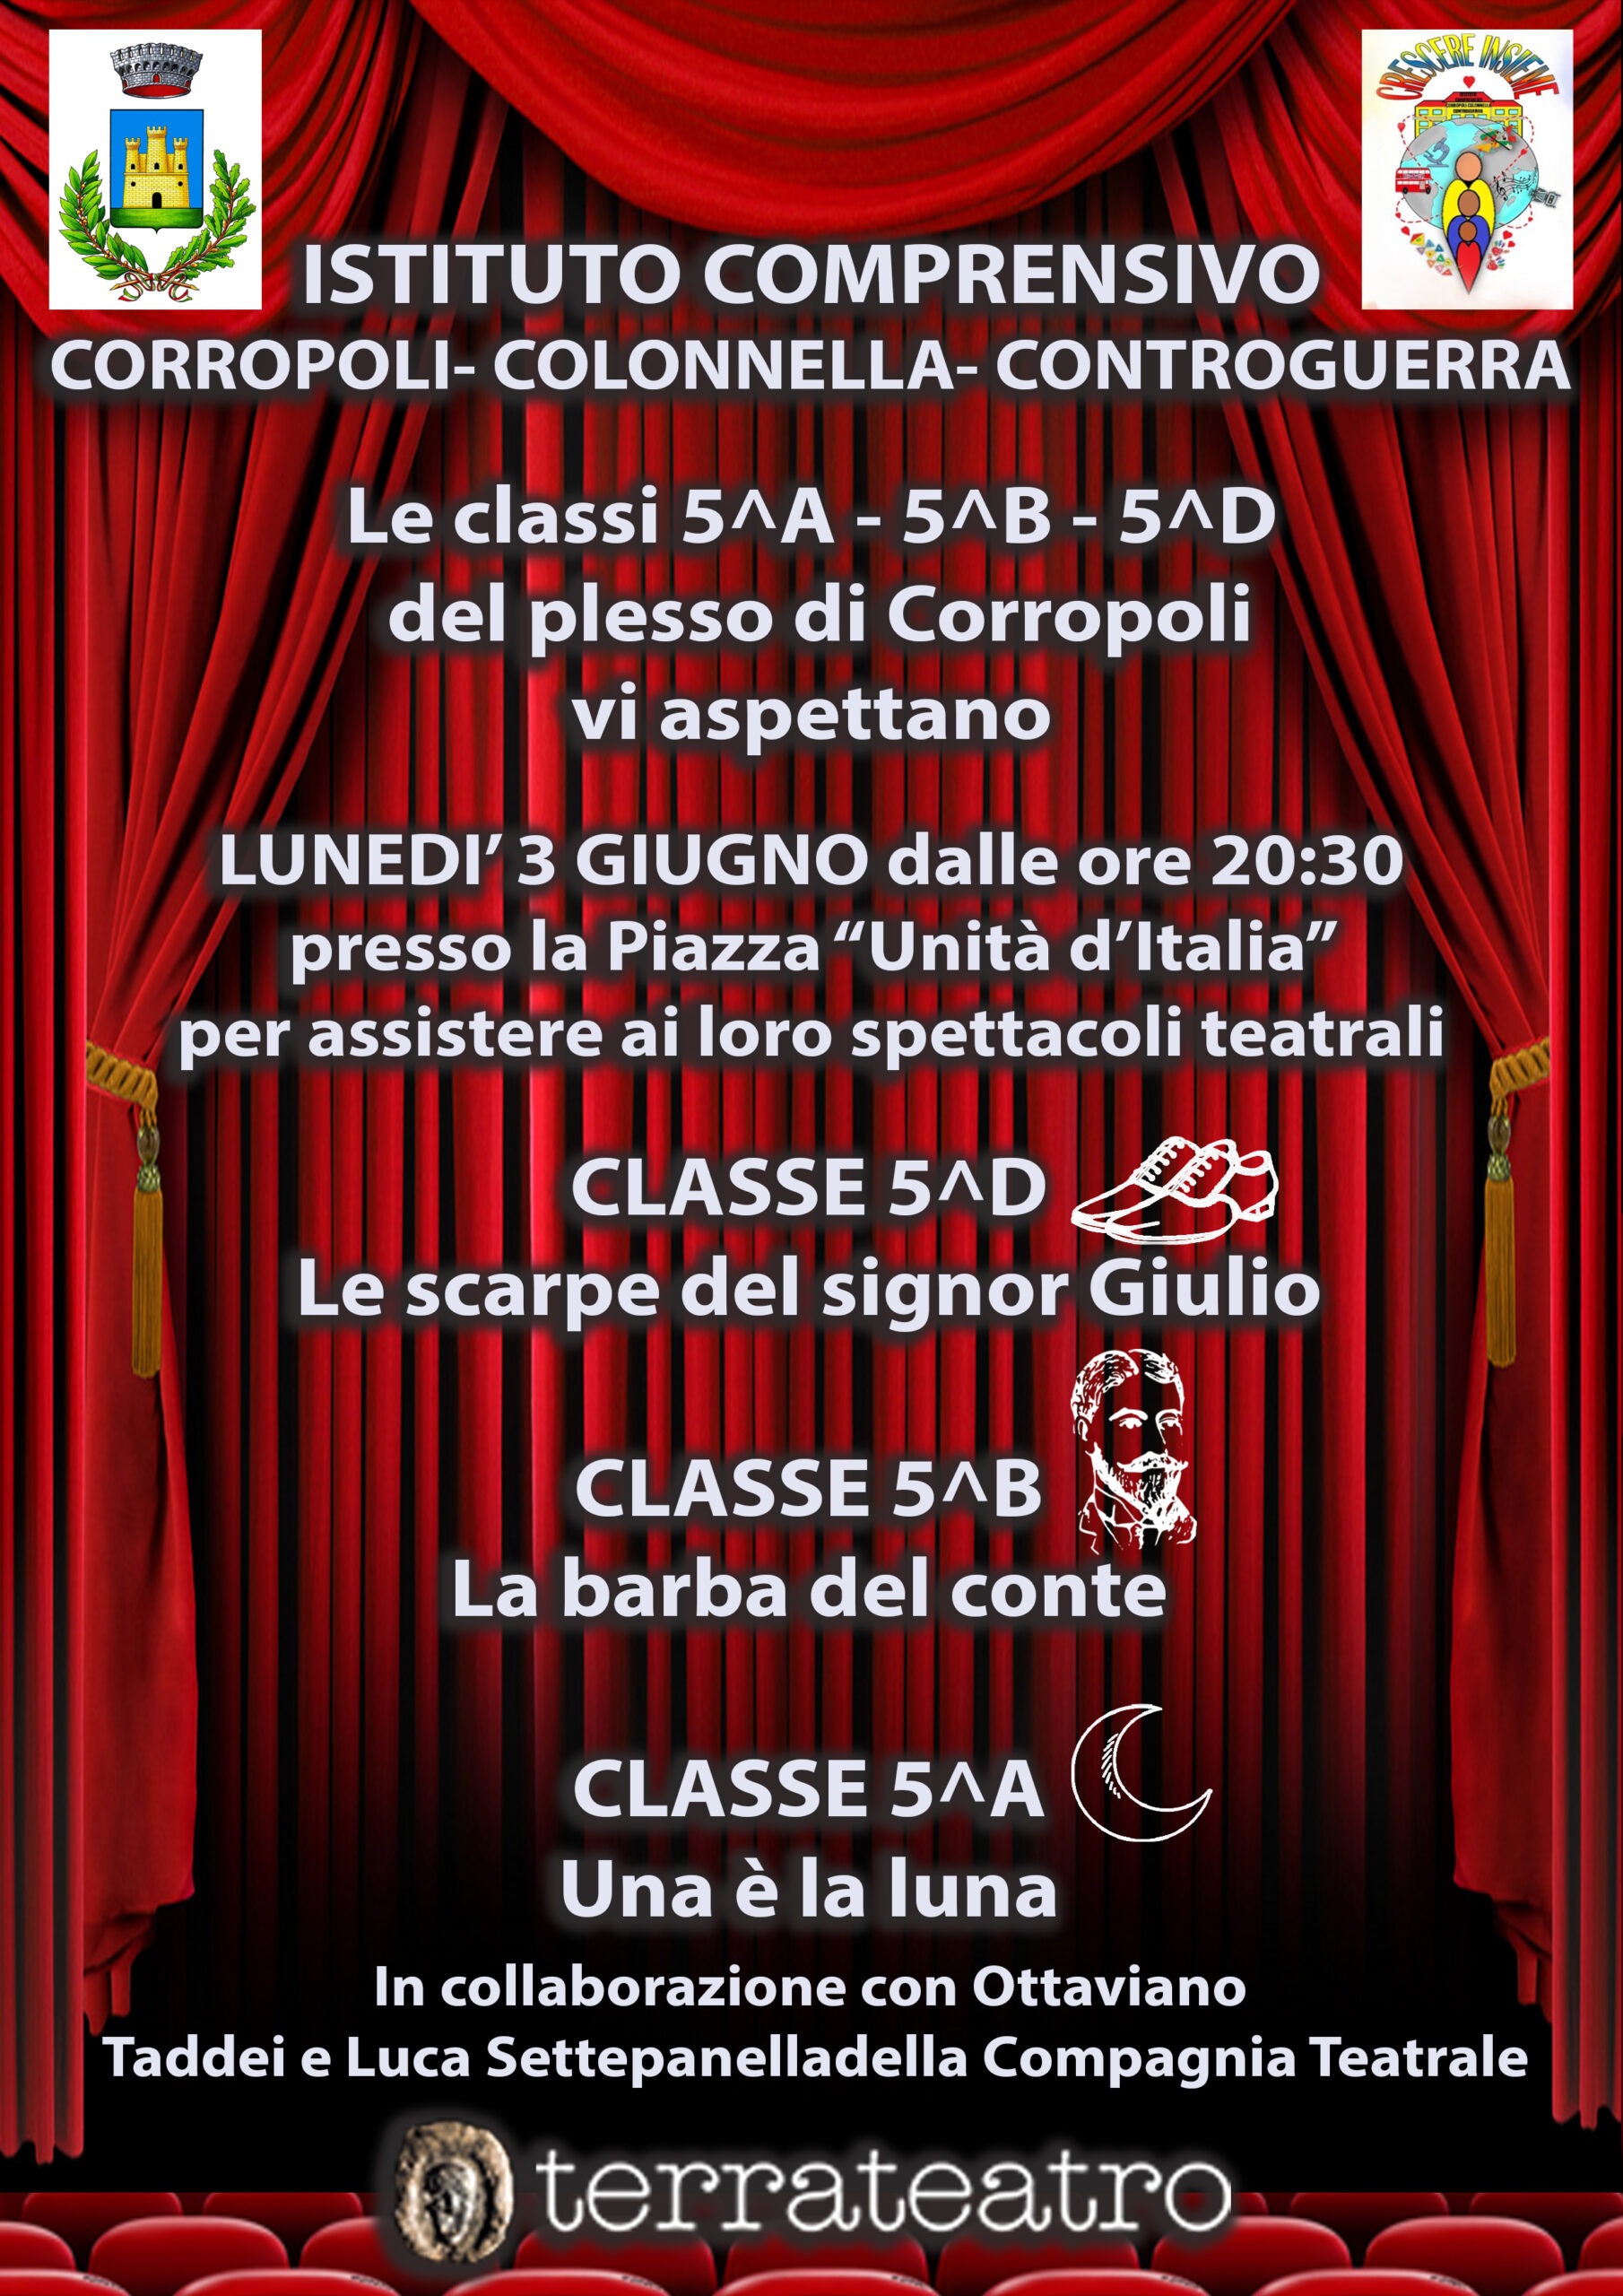 Evento, spettacoli teatrali a Corropoli